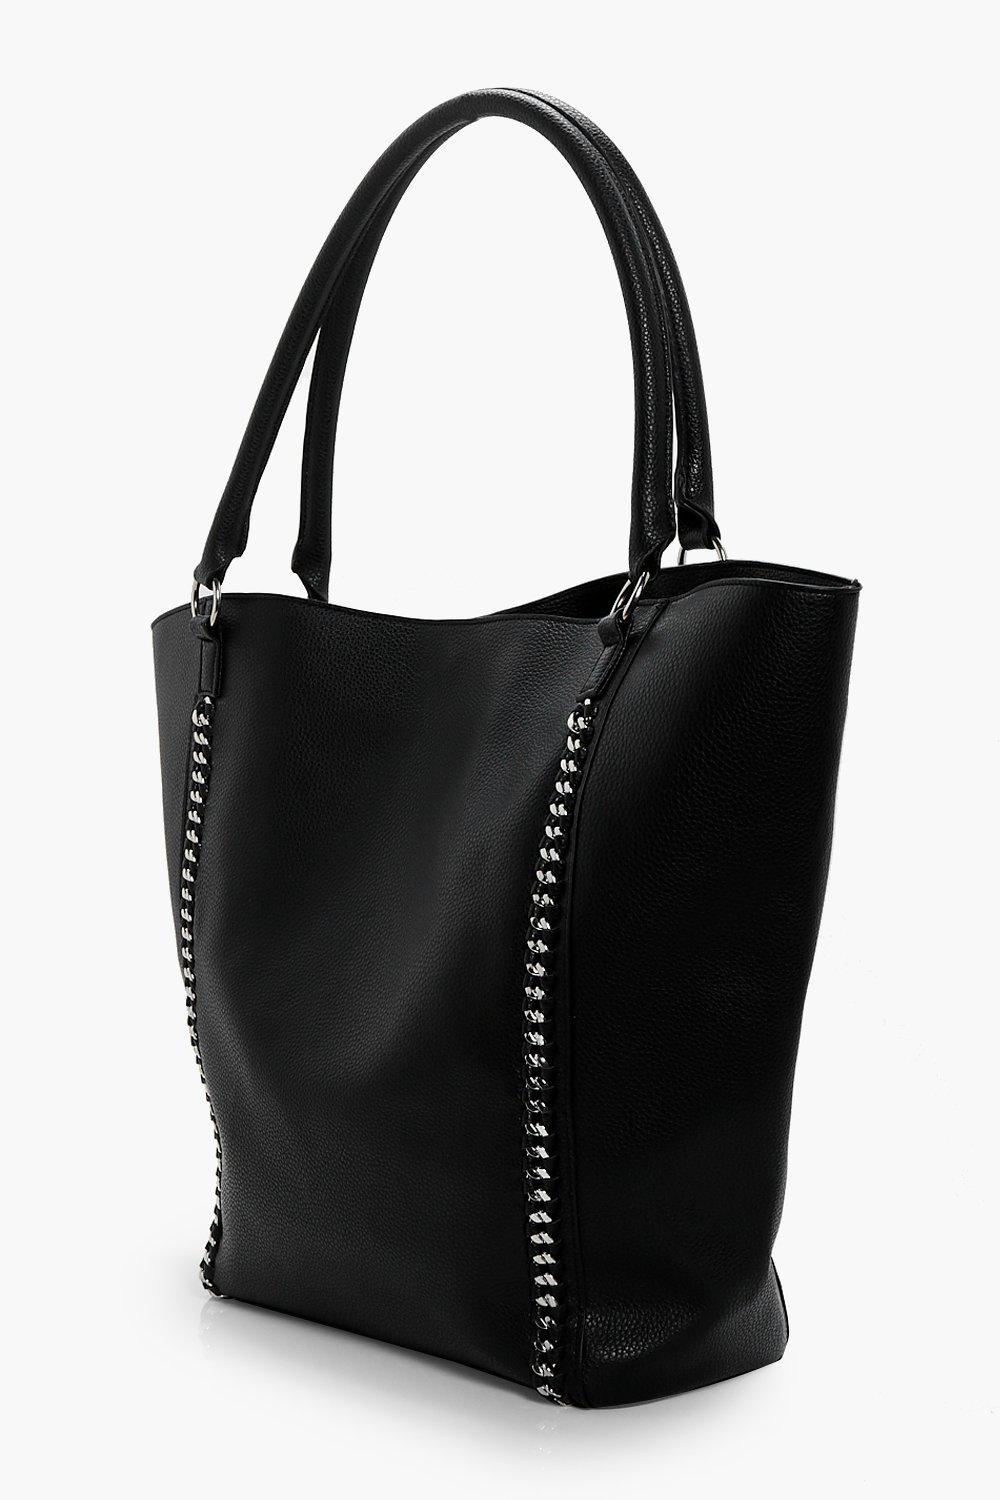 Boohoo Chain Detail Shopper Bag in Black - Lyst